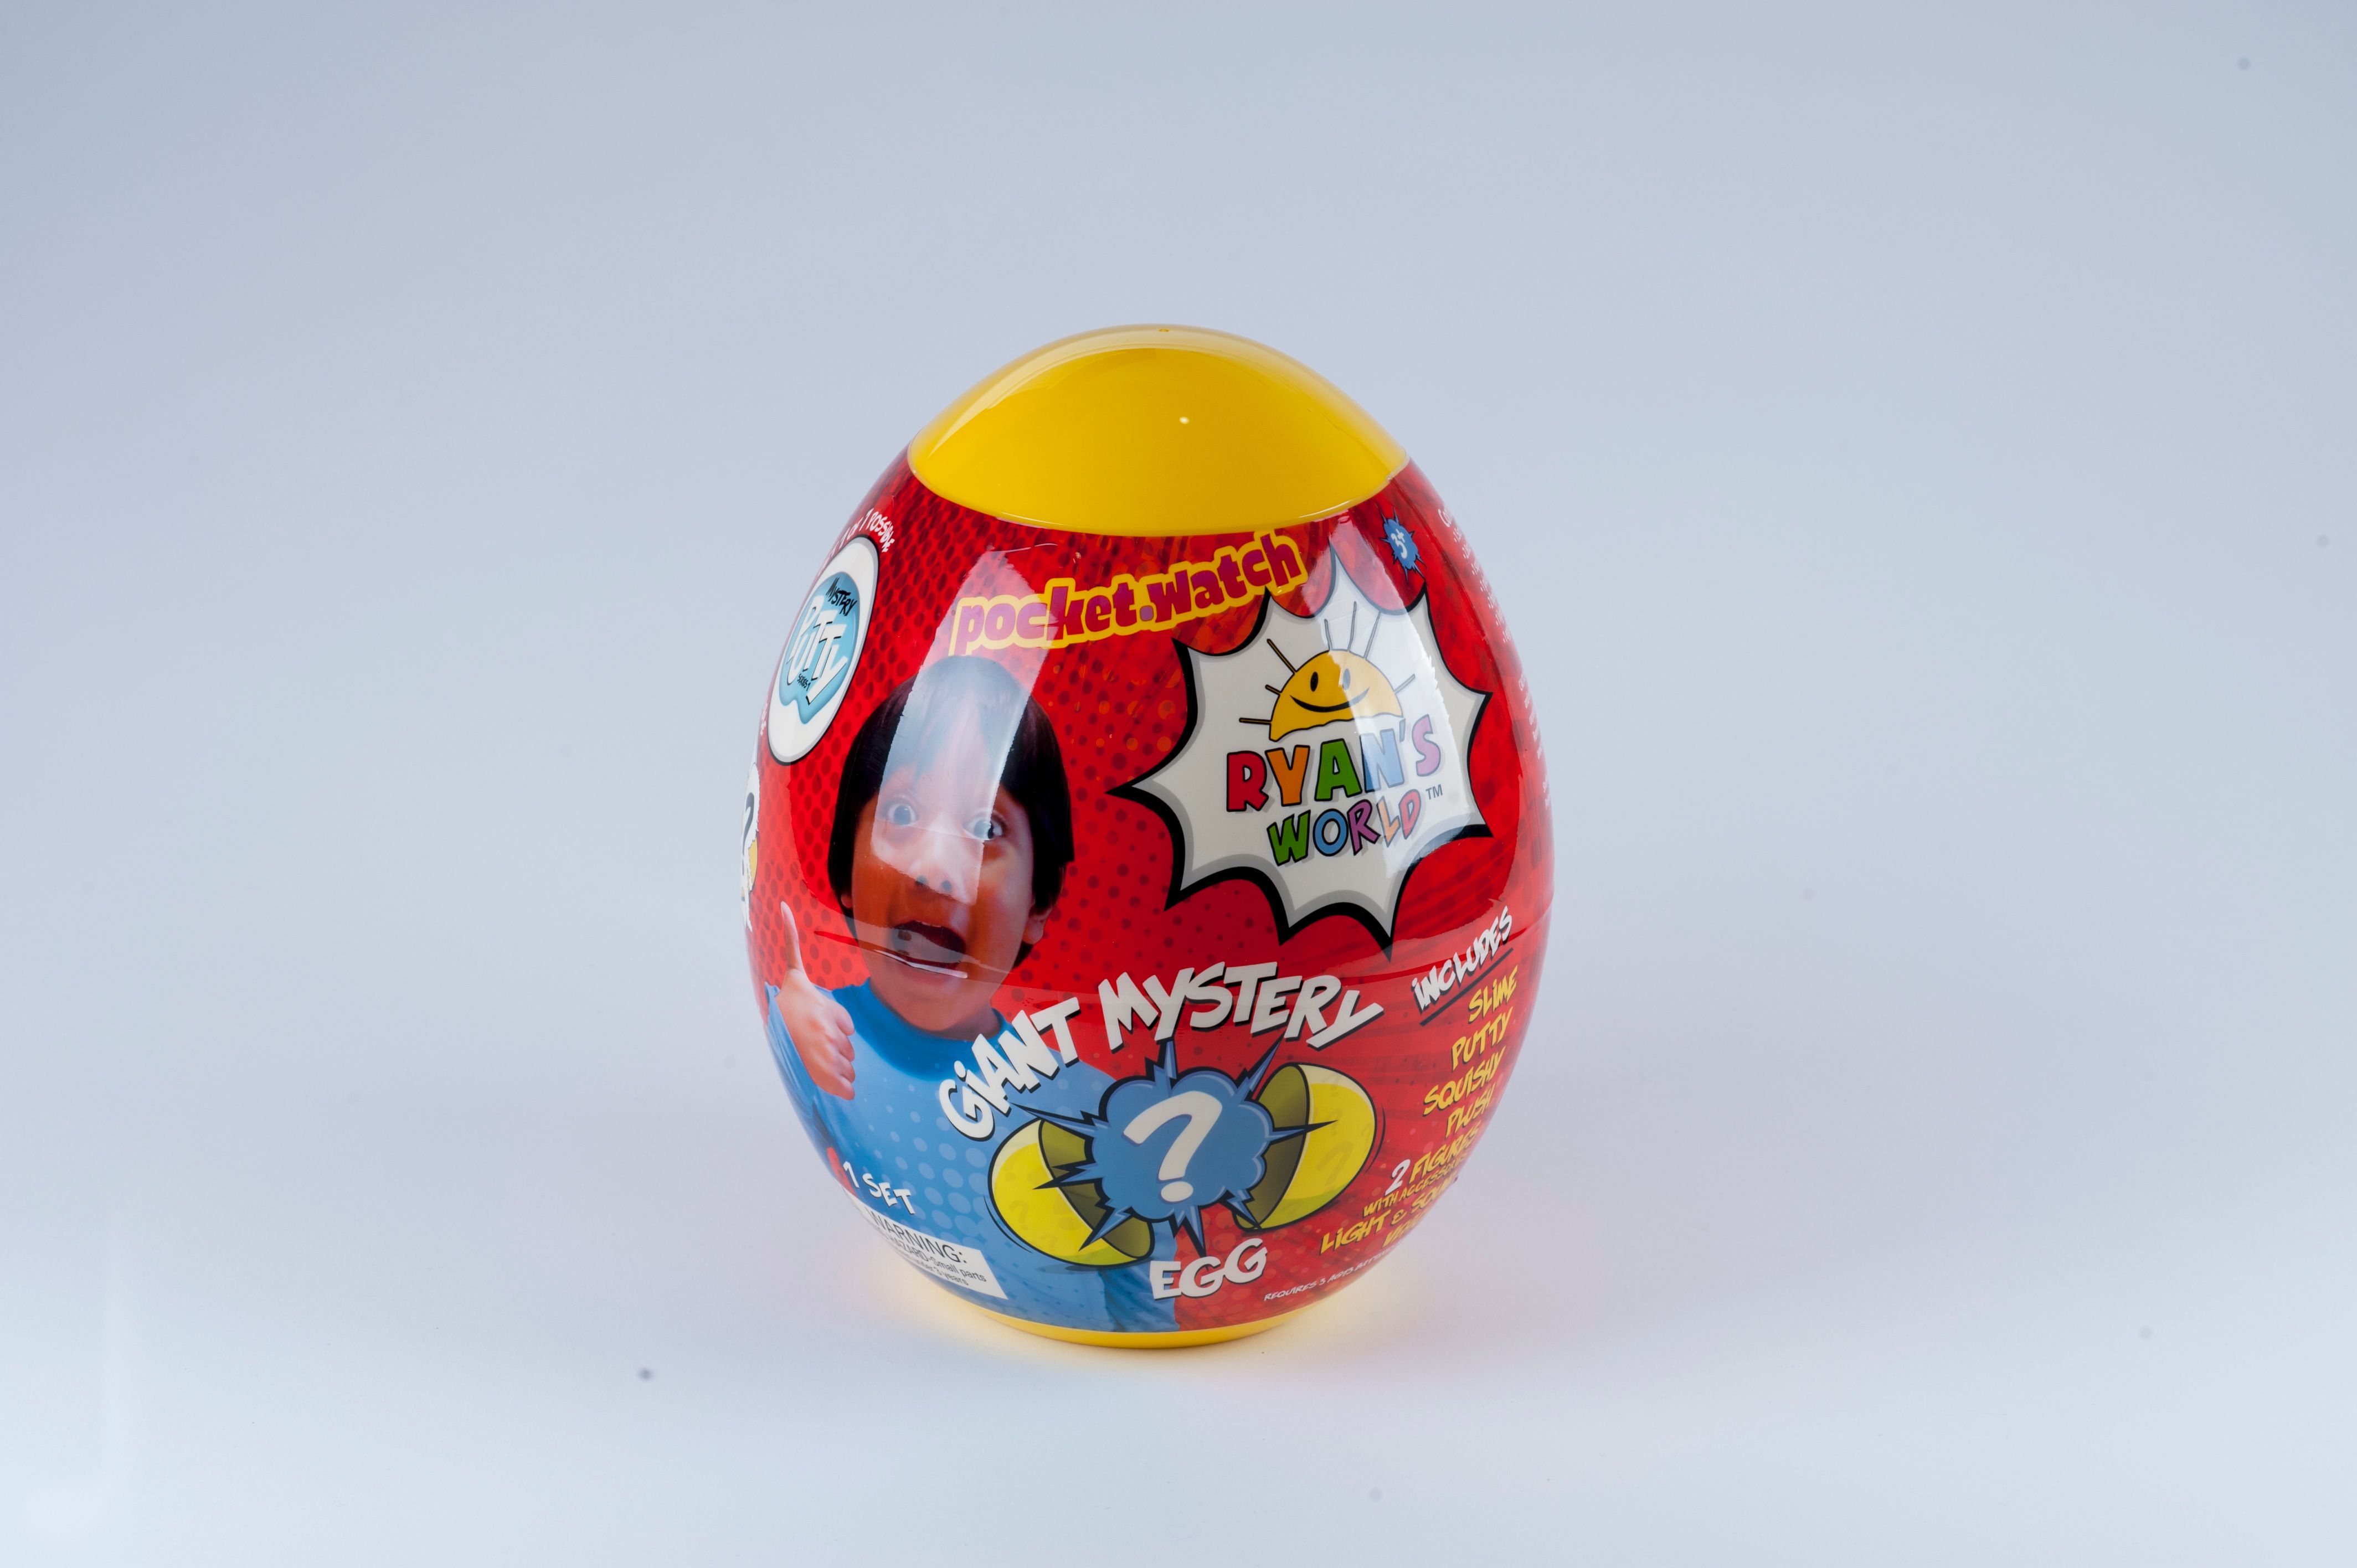 Ryans World Giant Mystery Egg - image 8 of 8